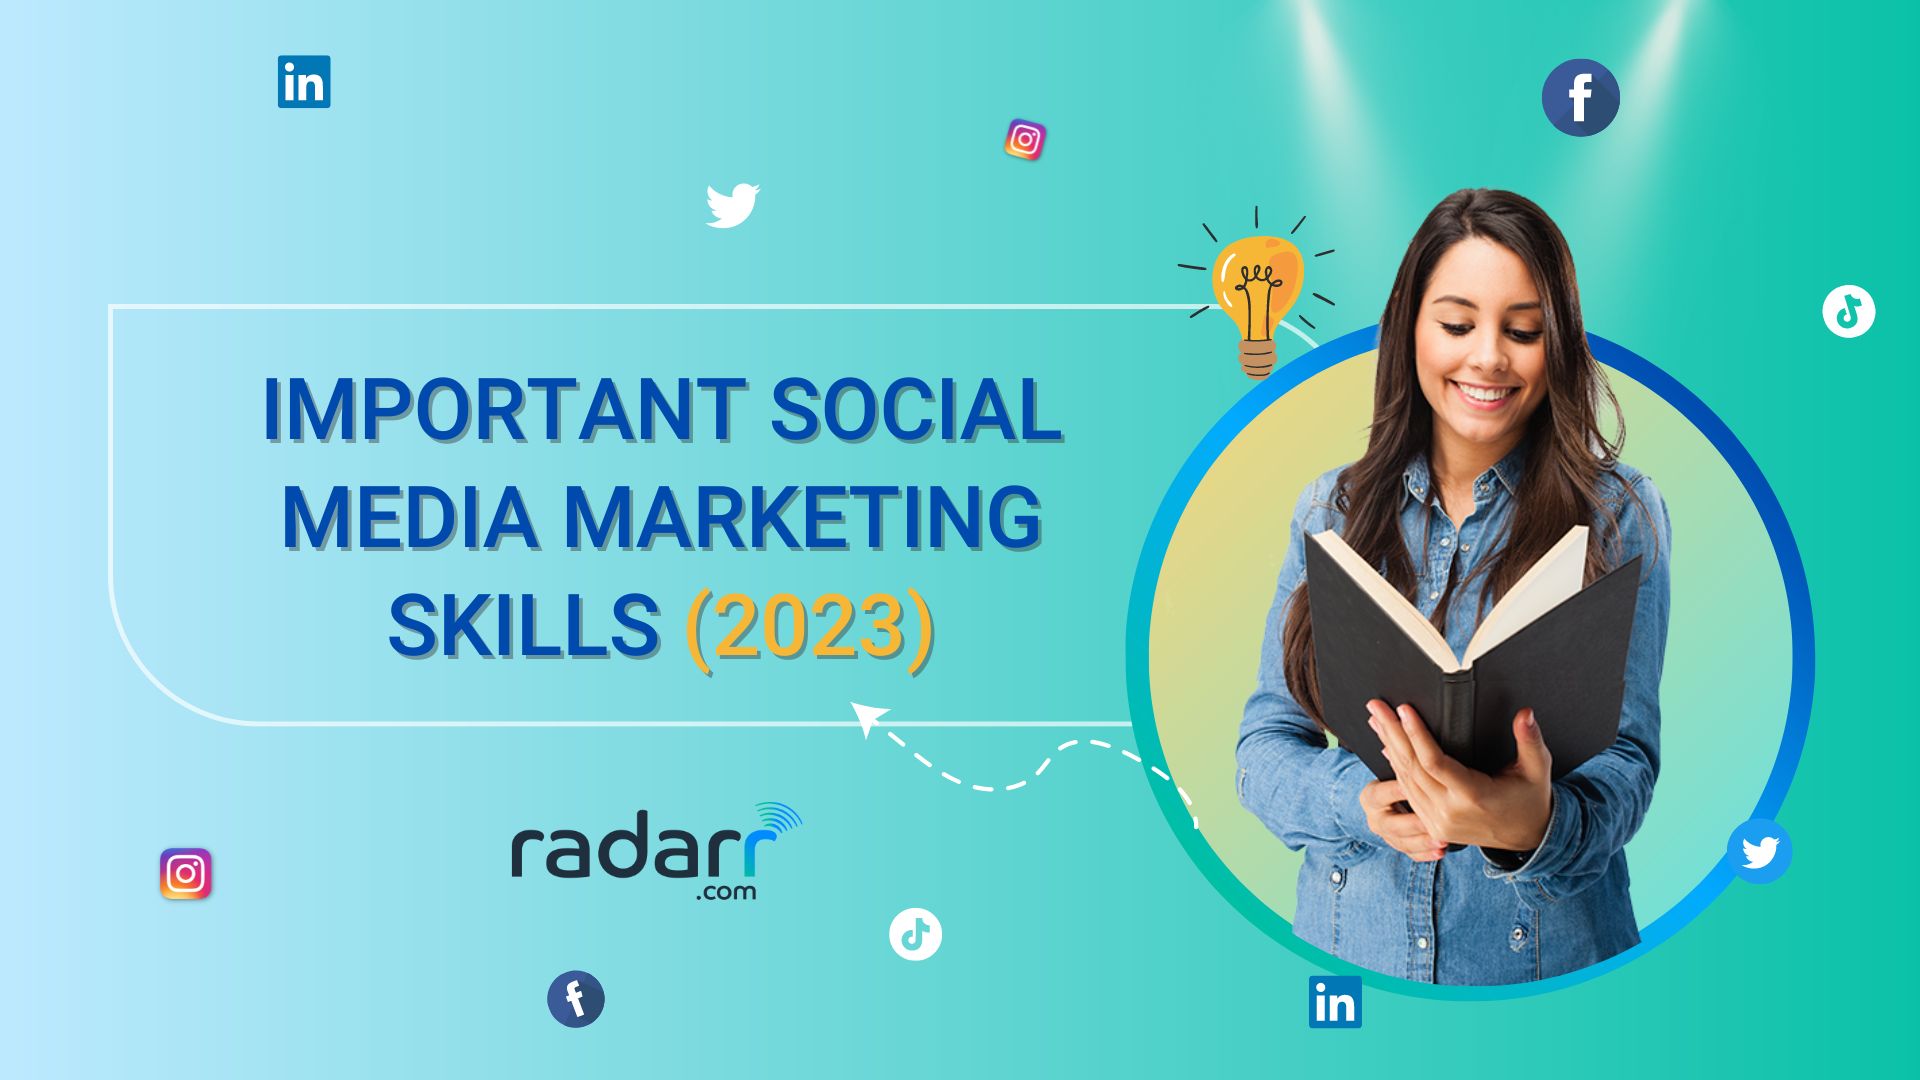 social media marketing skills for 2023